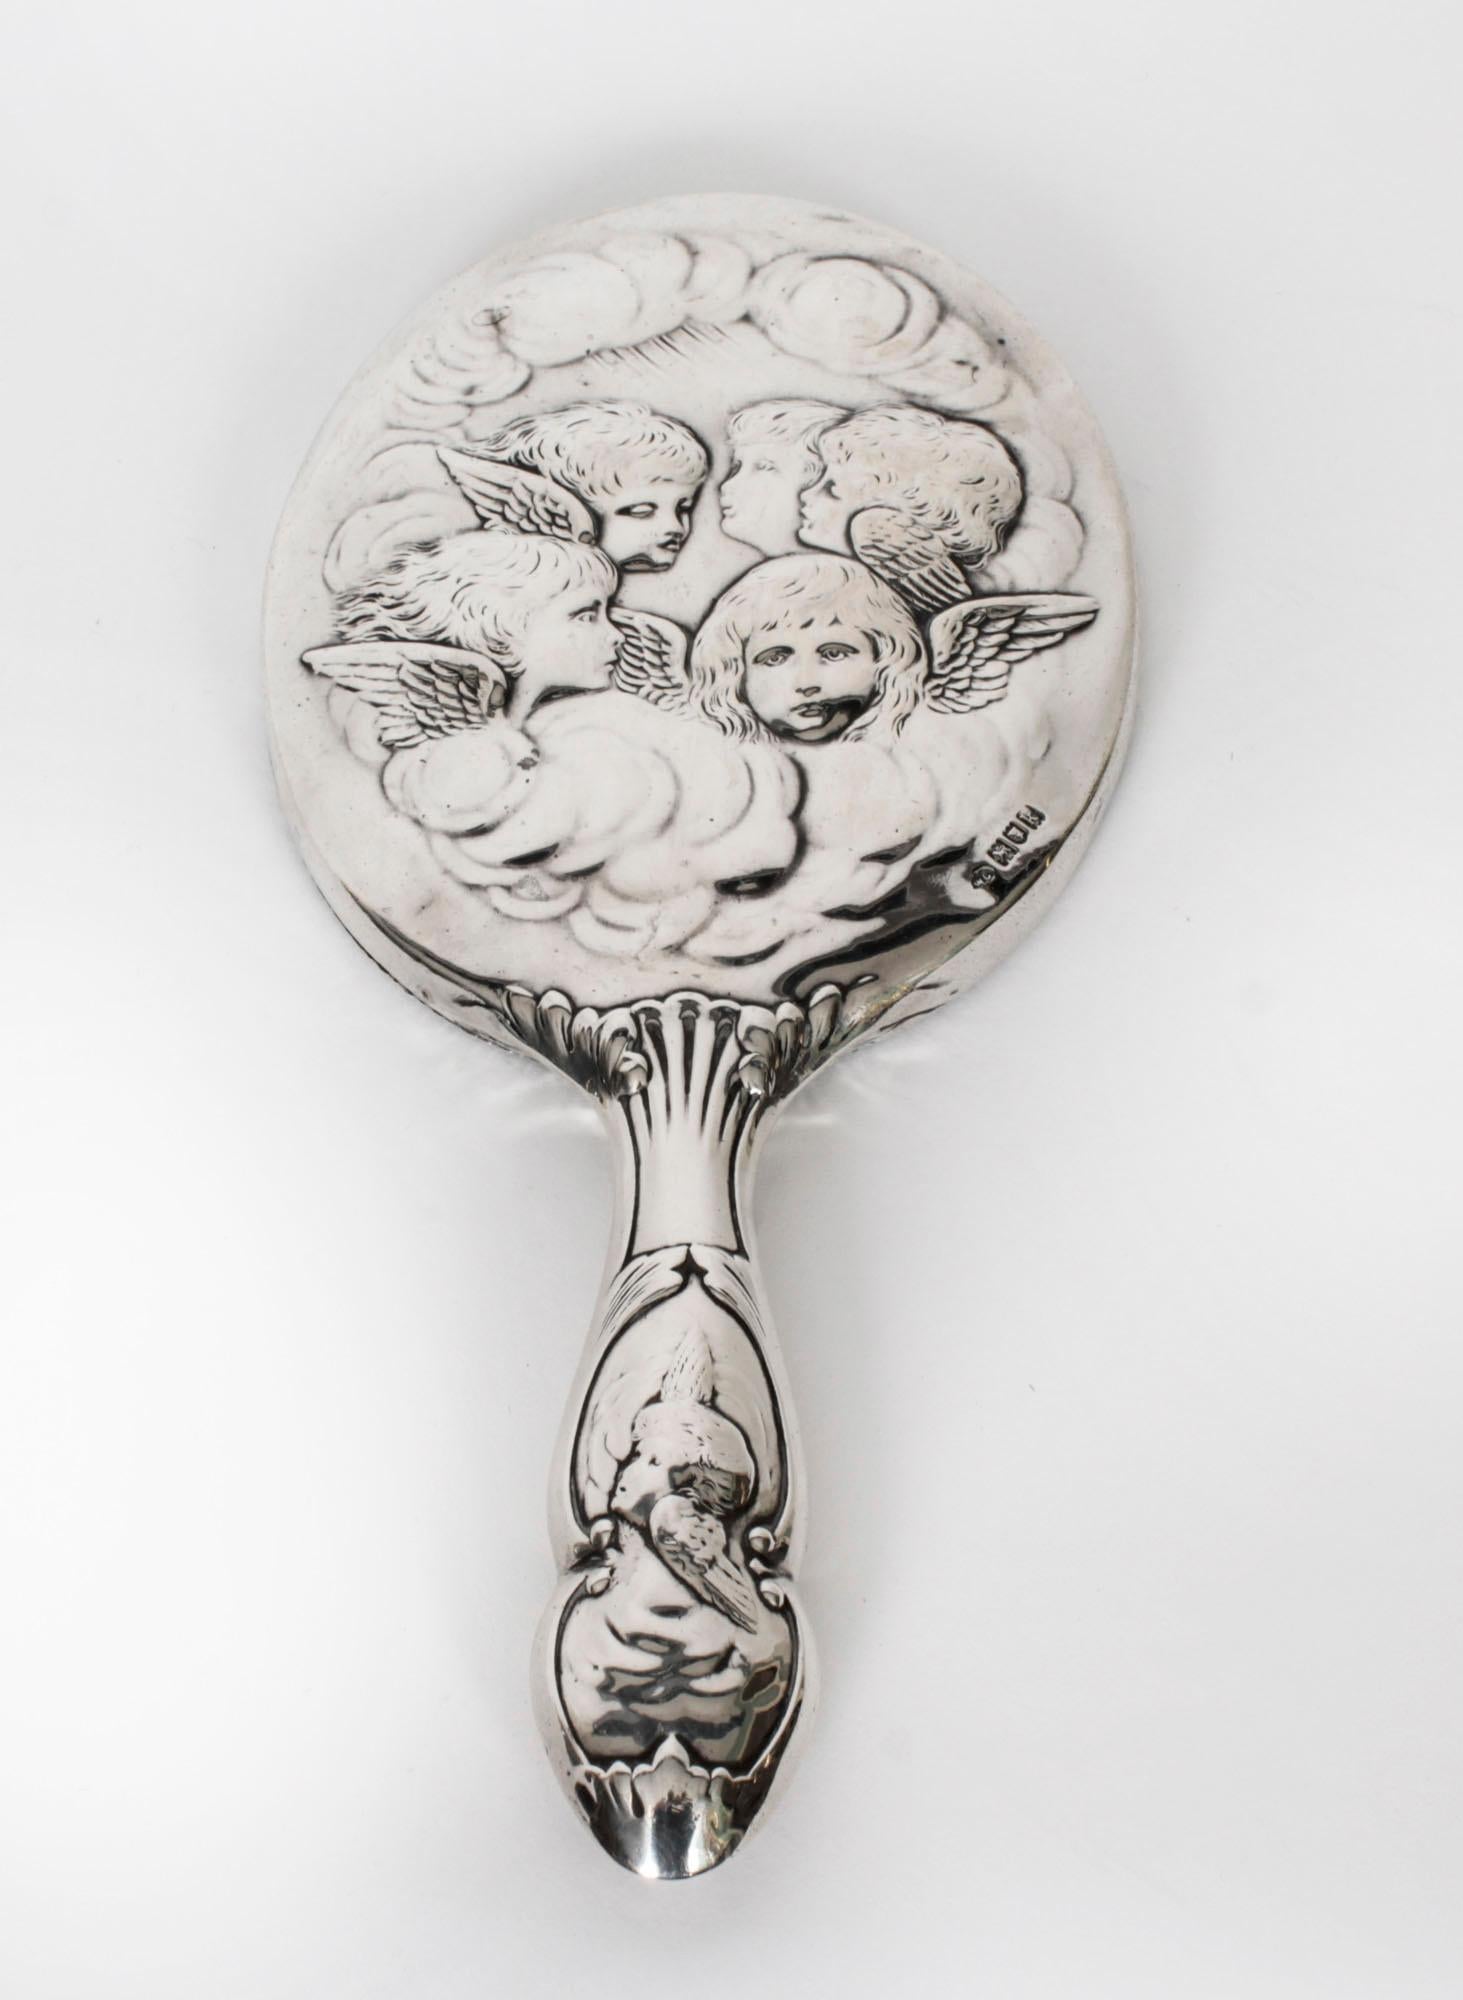 Dies ist eine atemberaubende englische antike Silber Hand Spiegel mit Punzierungen für London 1905 und die Hersteller Marke des renommierten Silberschmied William Comyns und Söhne.
 
Der Spiegel besteht aus ovalem, abgeschrägtem Glas mit einem